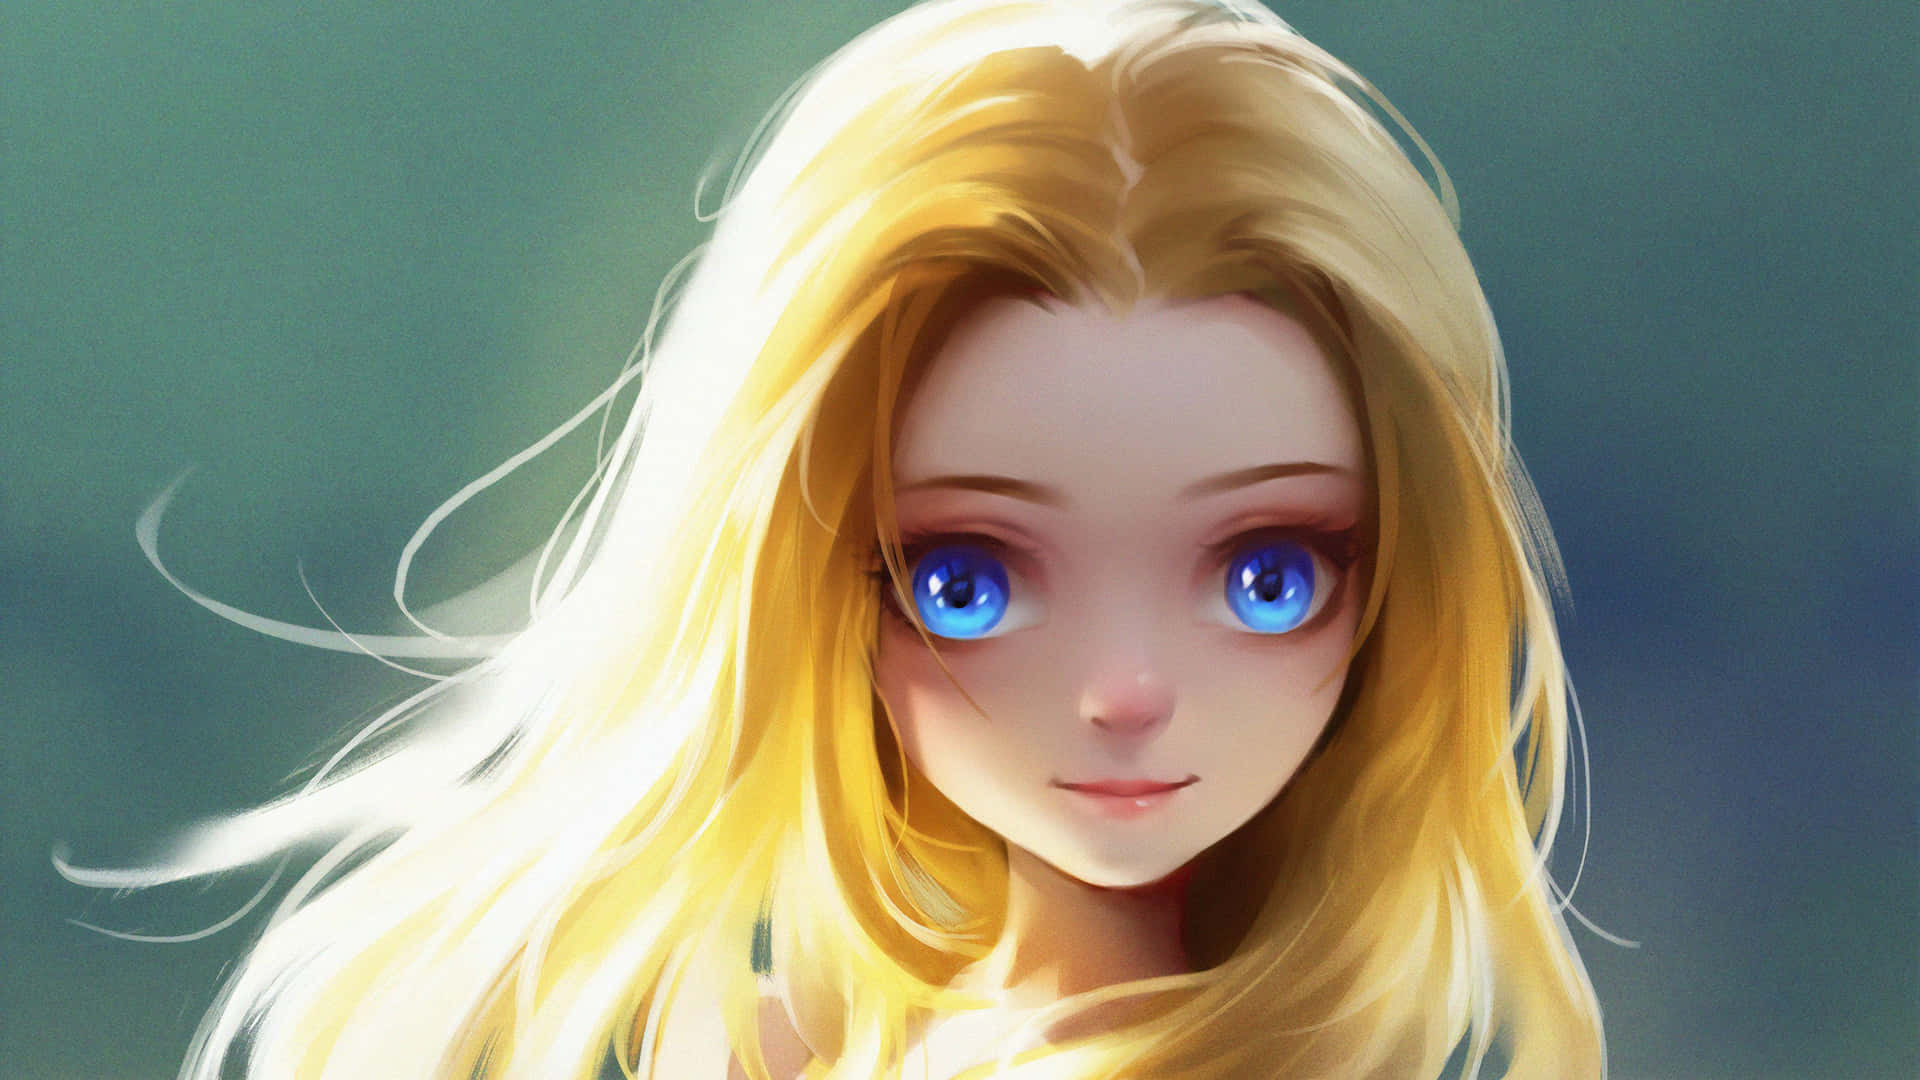 Blonde Anime Girl Blue Eyes Art Wallpaper